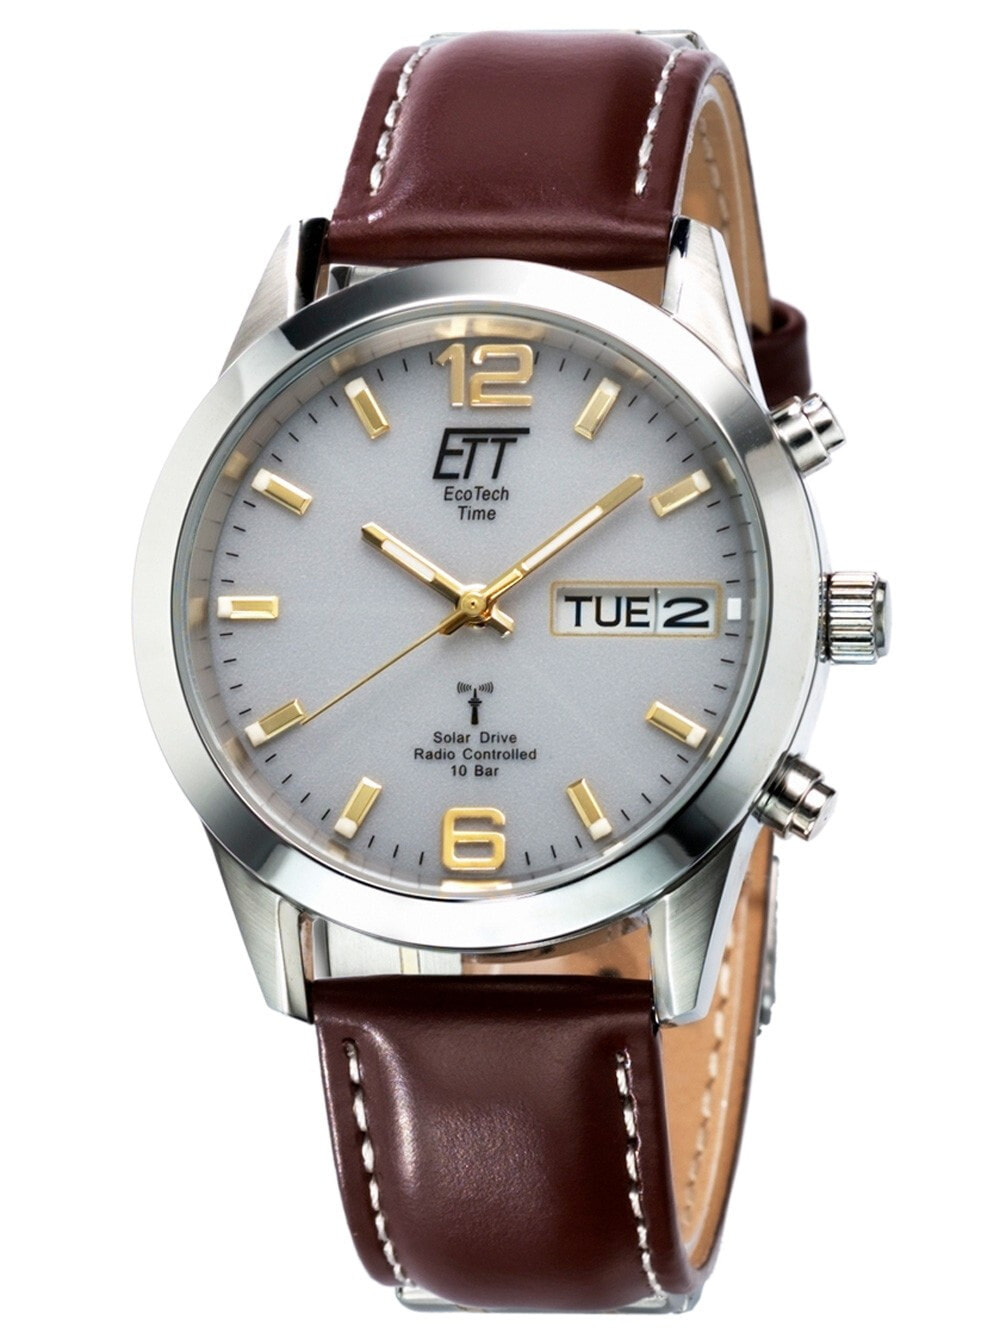 Мужские наручные часы с коричневым кожаным ремешком ETT EGS-11248-12L Solar Drive Radio Controlled Gobi Mens 40mm 10ATM